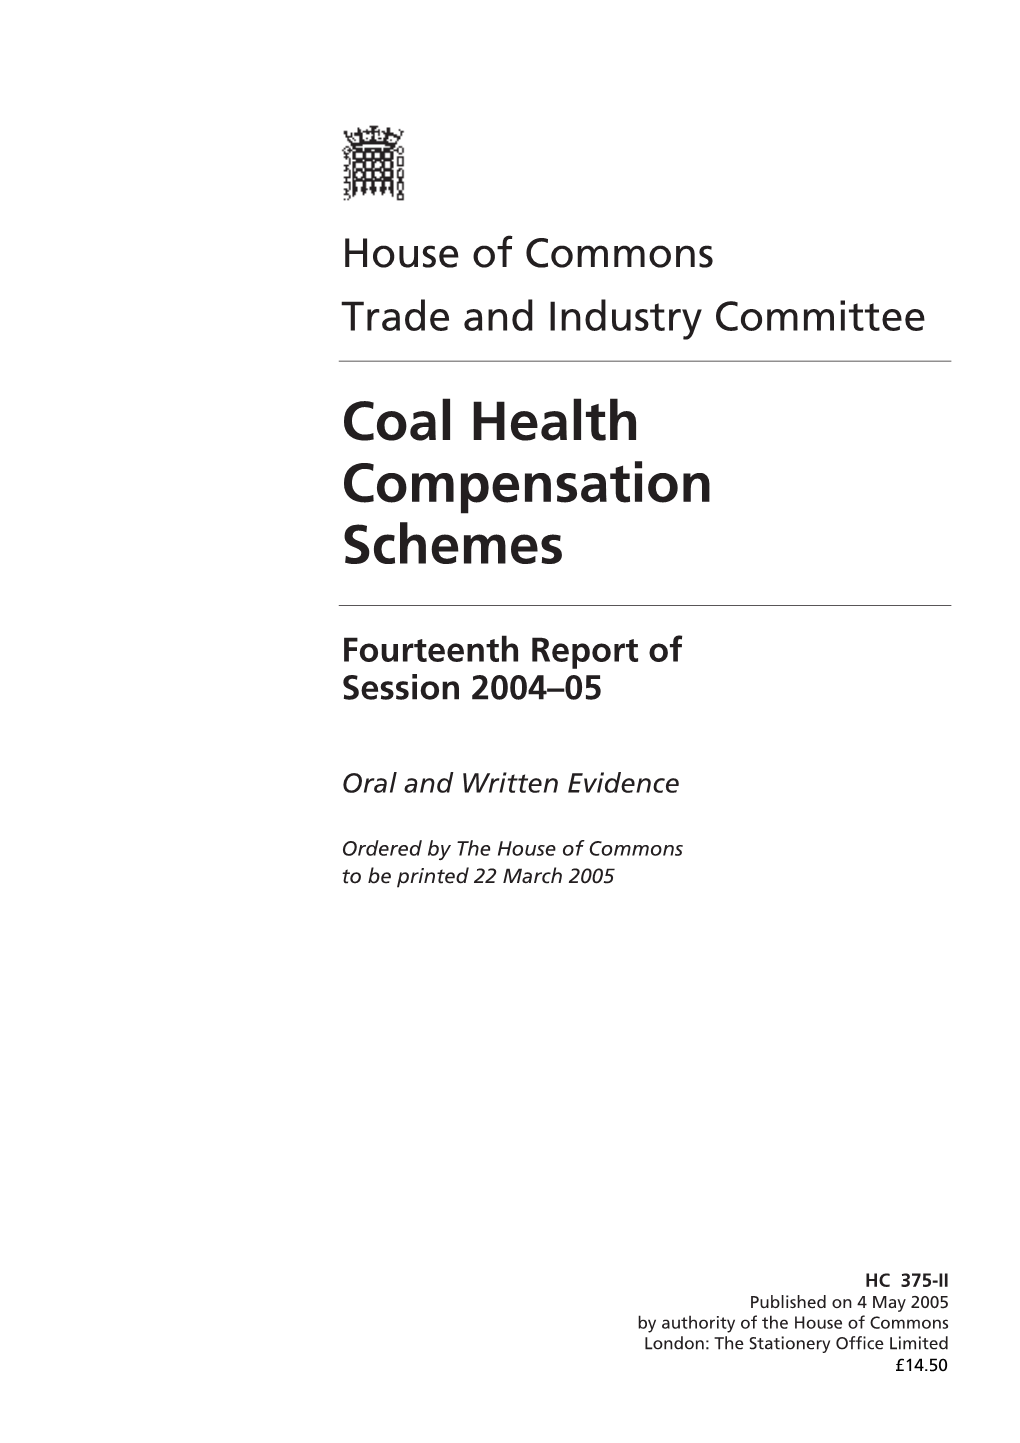 Coal Health Compensation Schemes